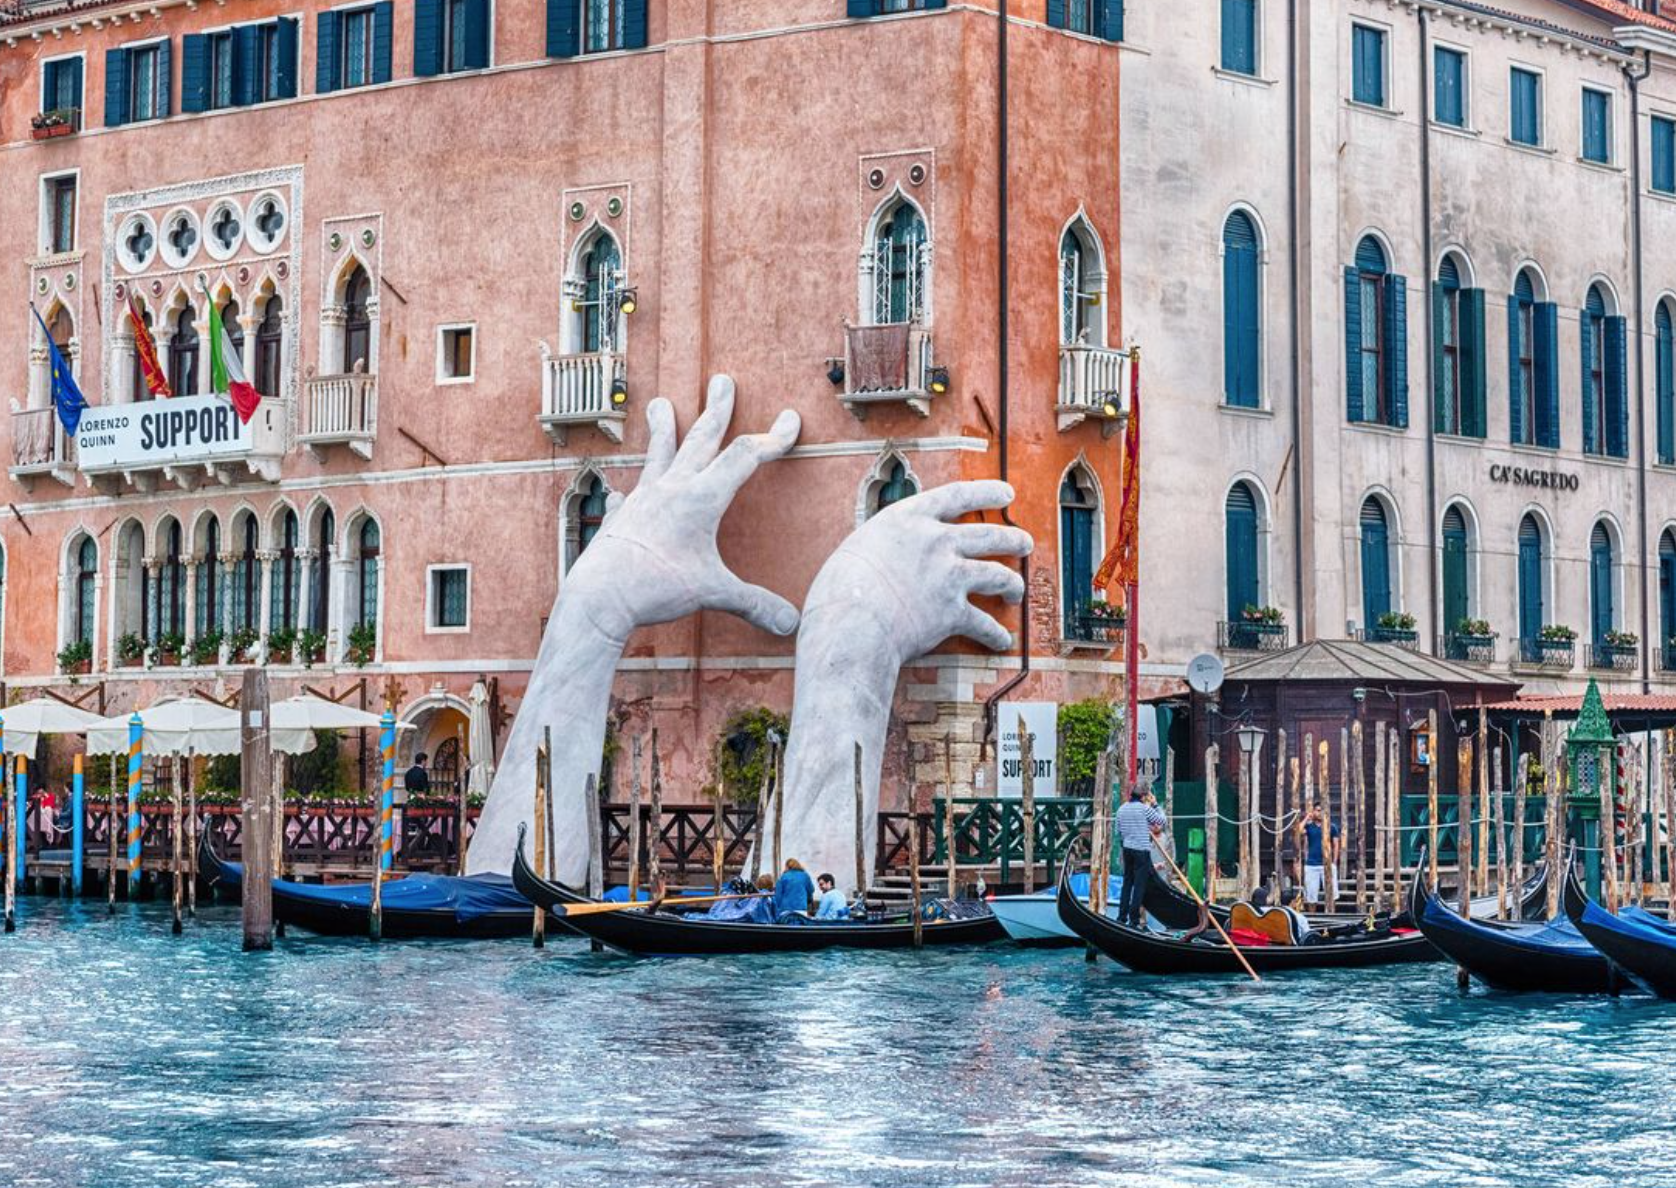 Inicia el cobro de ingreso a turistas en Venecia